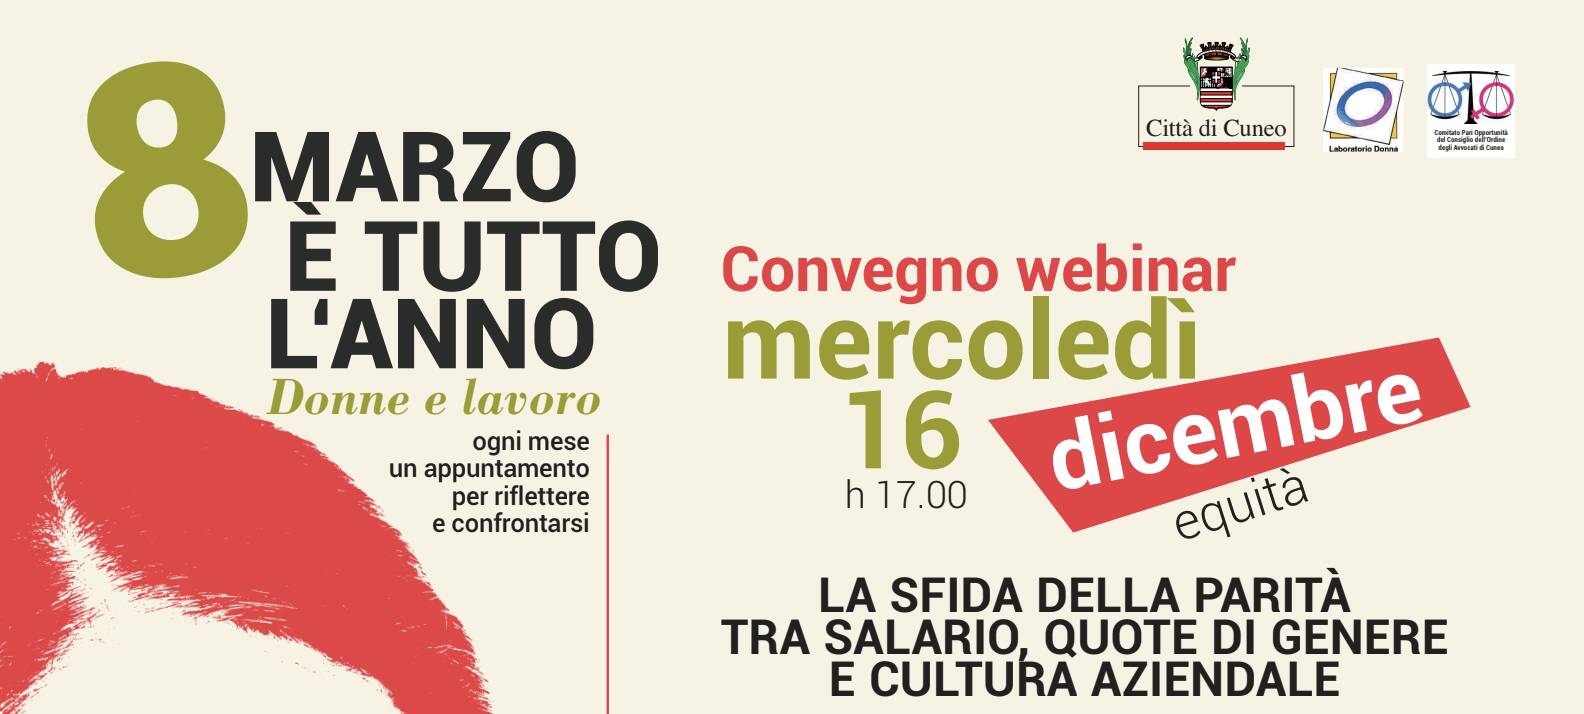 Cuneo, 8 marzo è tutto l’anno “Webinar La sfida della parità tra salario, quote di genere e cultura aziendale”